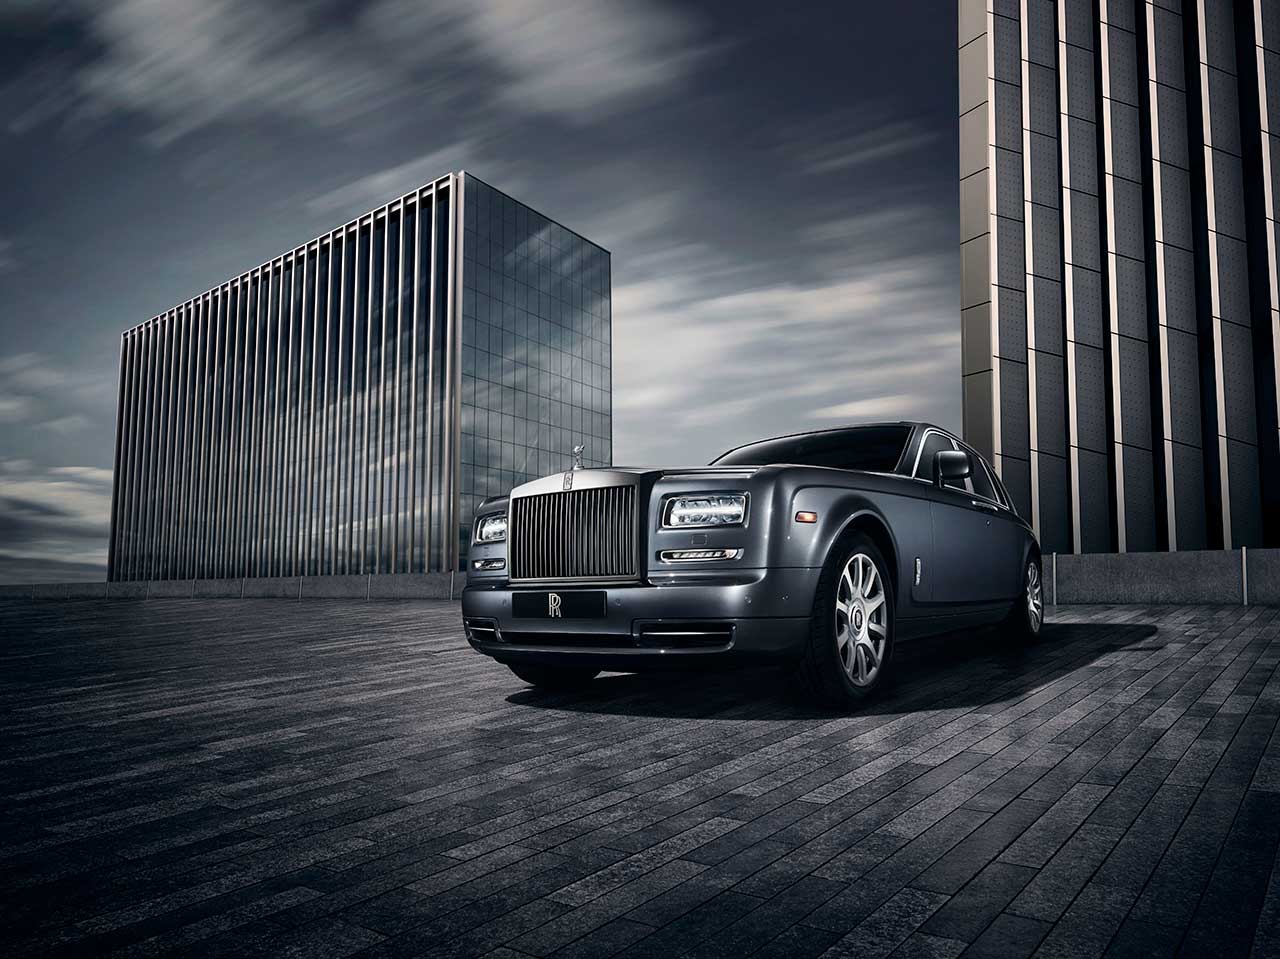 Xe Rolls-Royce đẳng cấp là biểu tượng của sự sang trọng và đẳng cấp tại thị trường ô tô thế giới. Hãy xem hình ảnh của xe Rolls-Royce để cảm nhận được vẻ đẹp và độc đáo của dòng xe này.